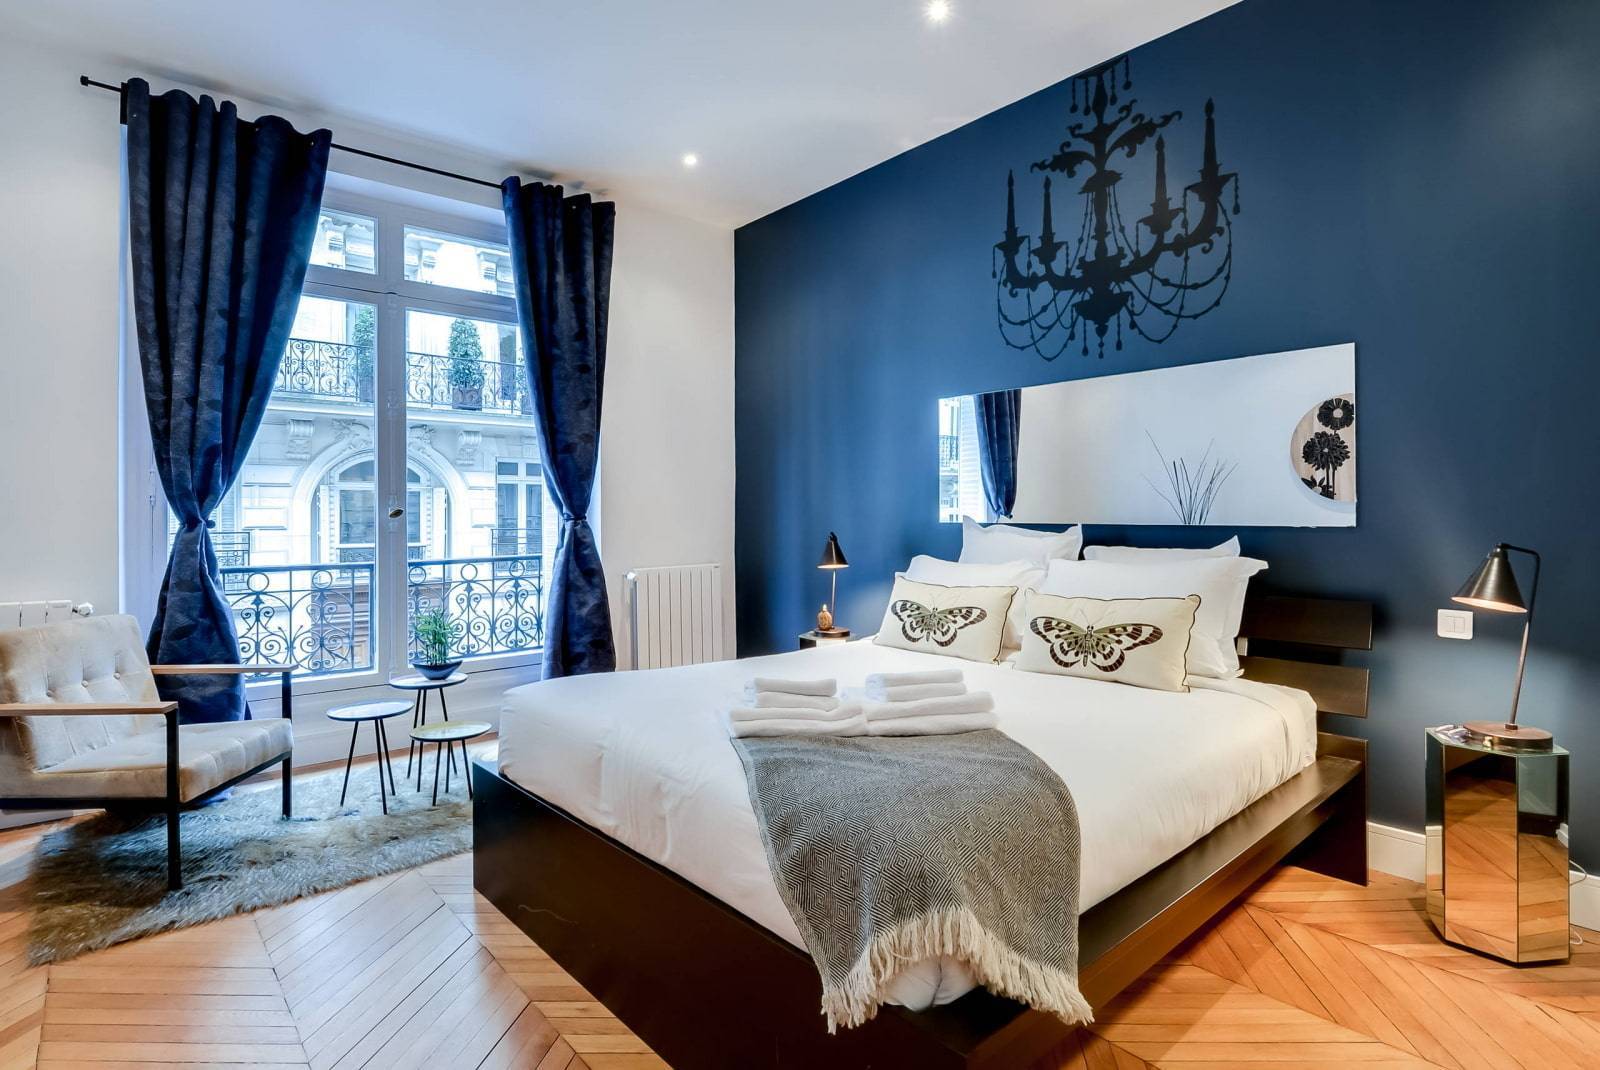 Дизайн интерьера спальни в синих тонах - 33 фото идеи синей спальни